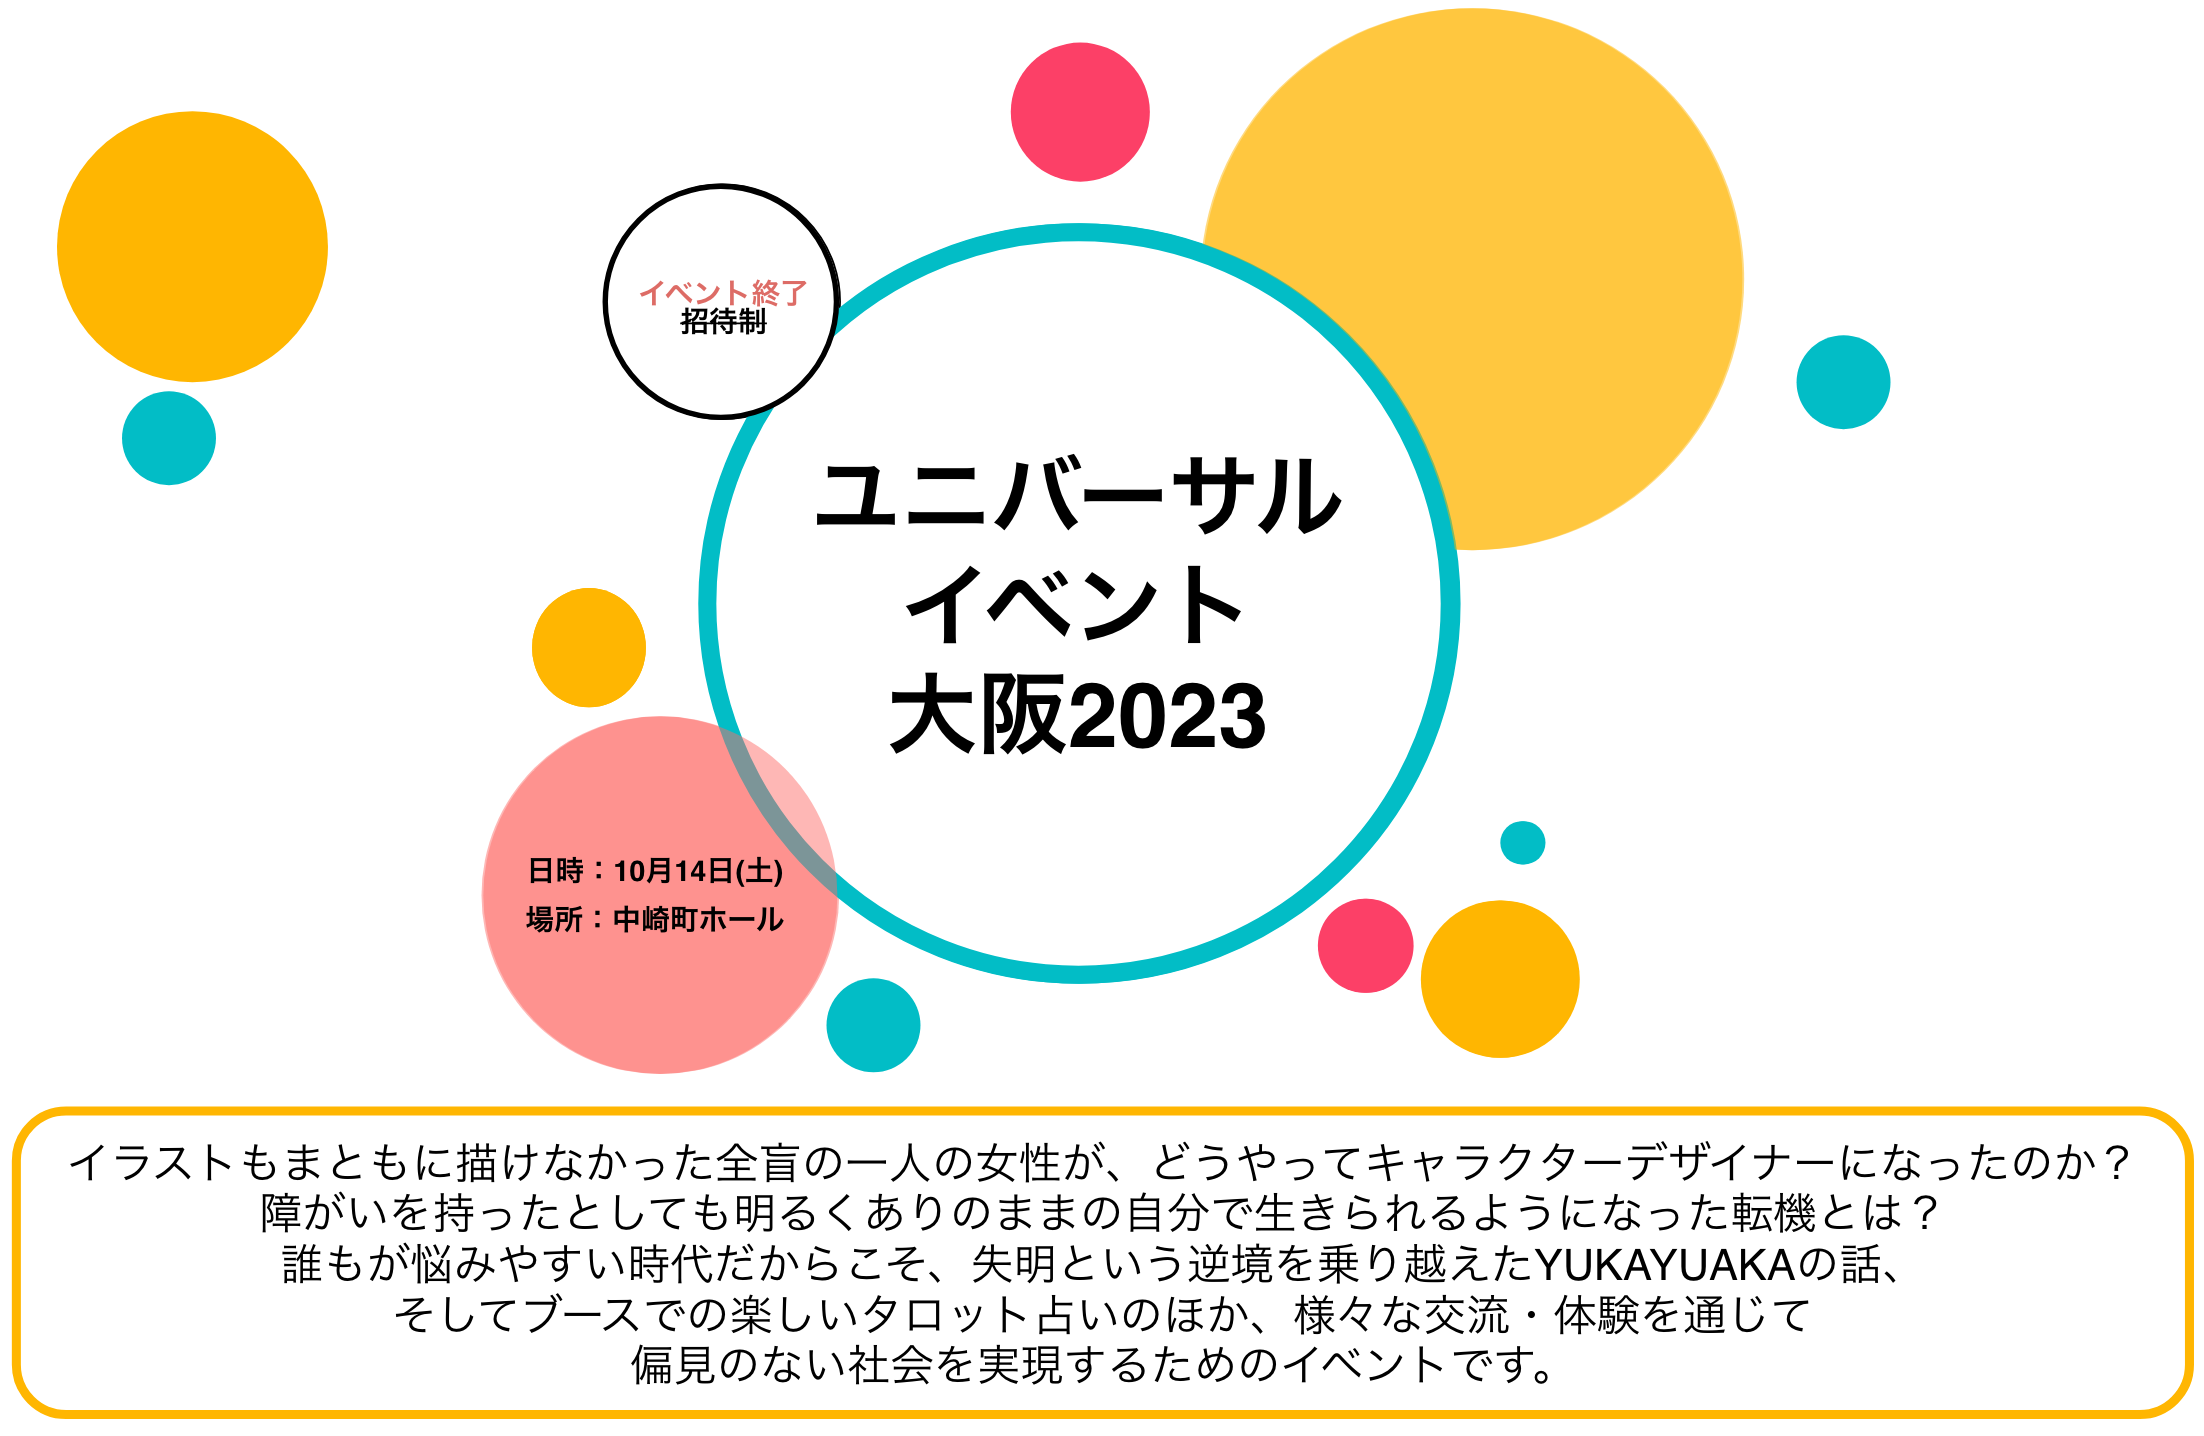 ユニバーサルイベント大阪2023。招待制。日時は10月14日土曜日。場所は中崎町ホール。